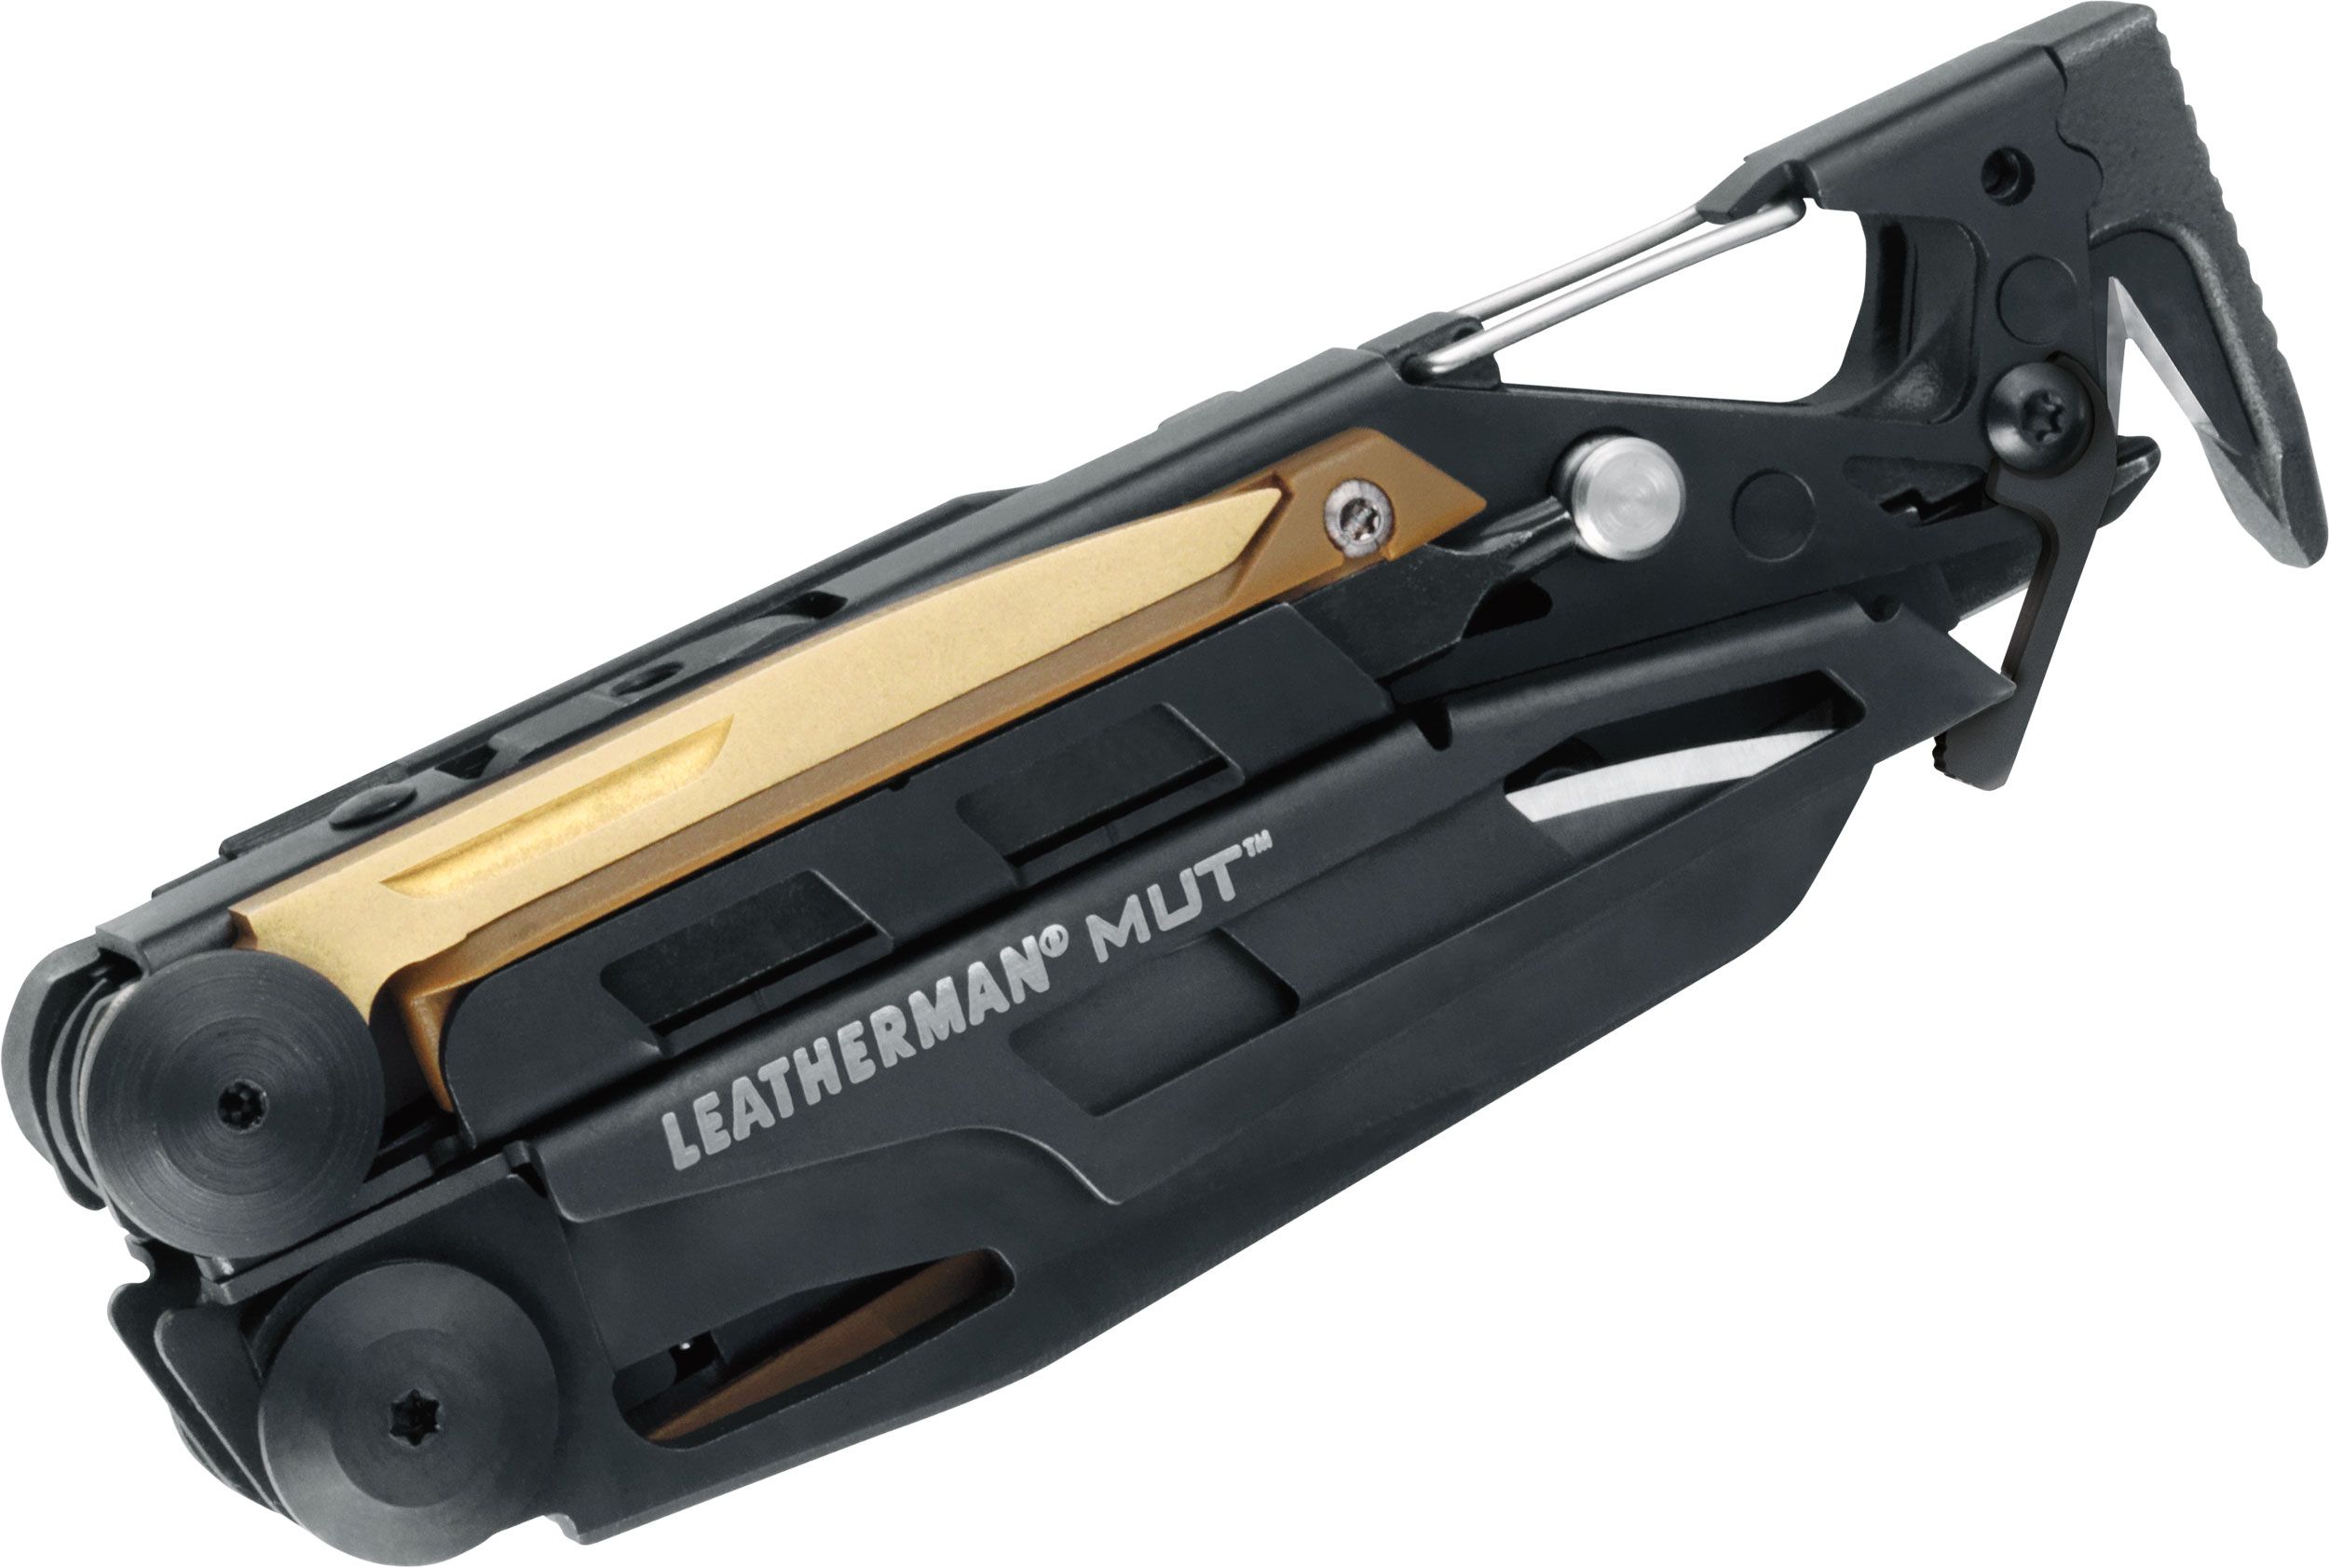 Leatherman MUT Heavy-Duty Multi-Tool, Black Oxide, Brown MOLLE 